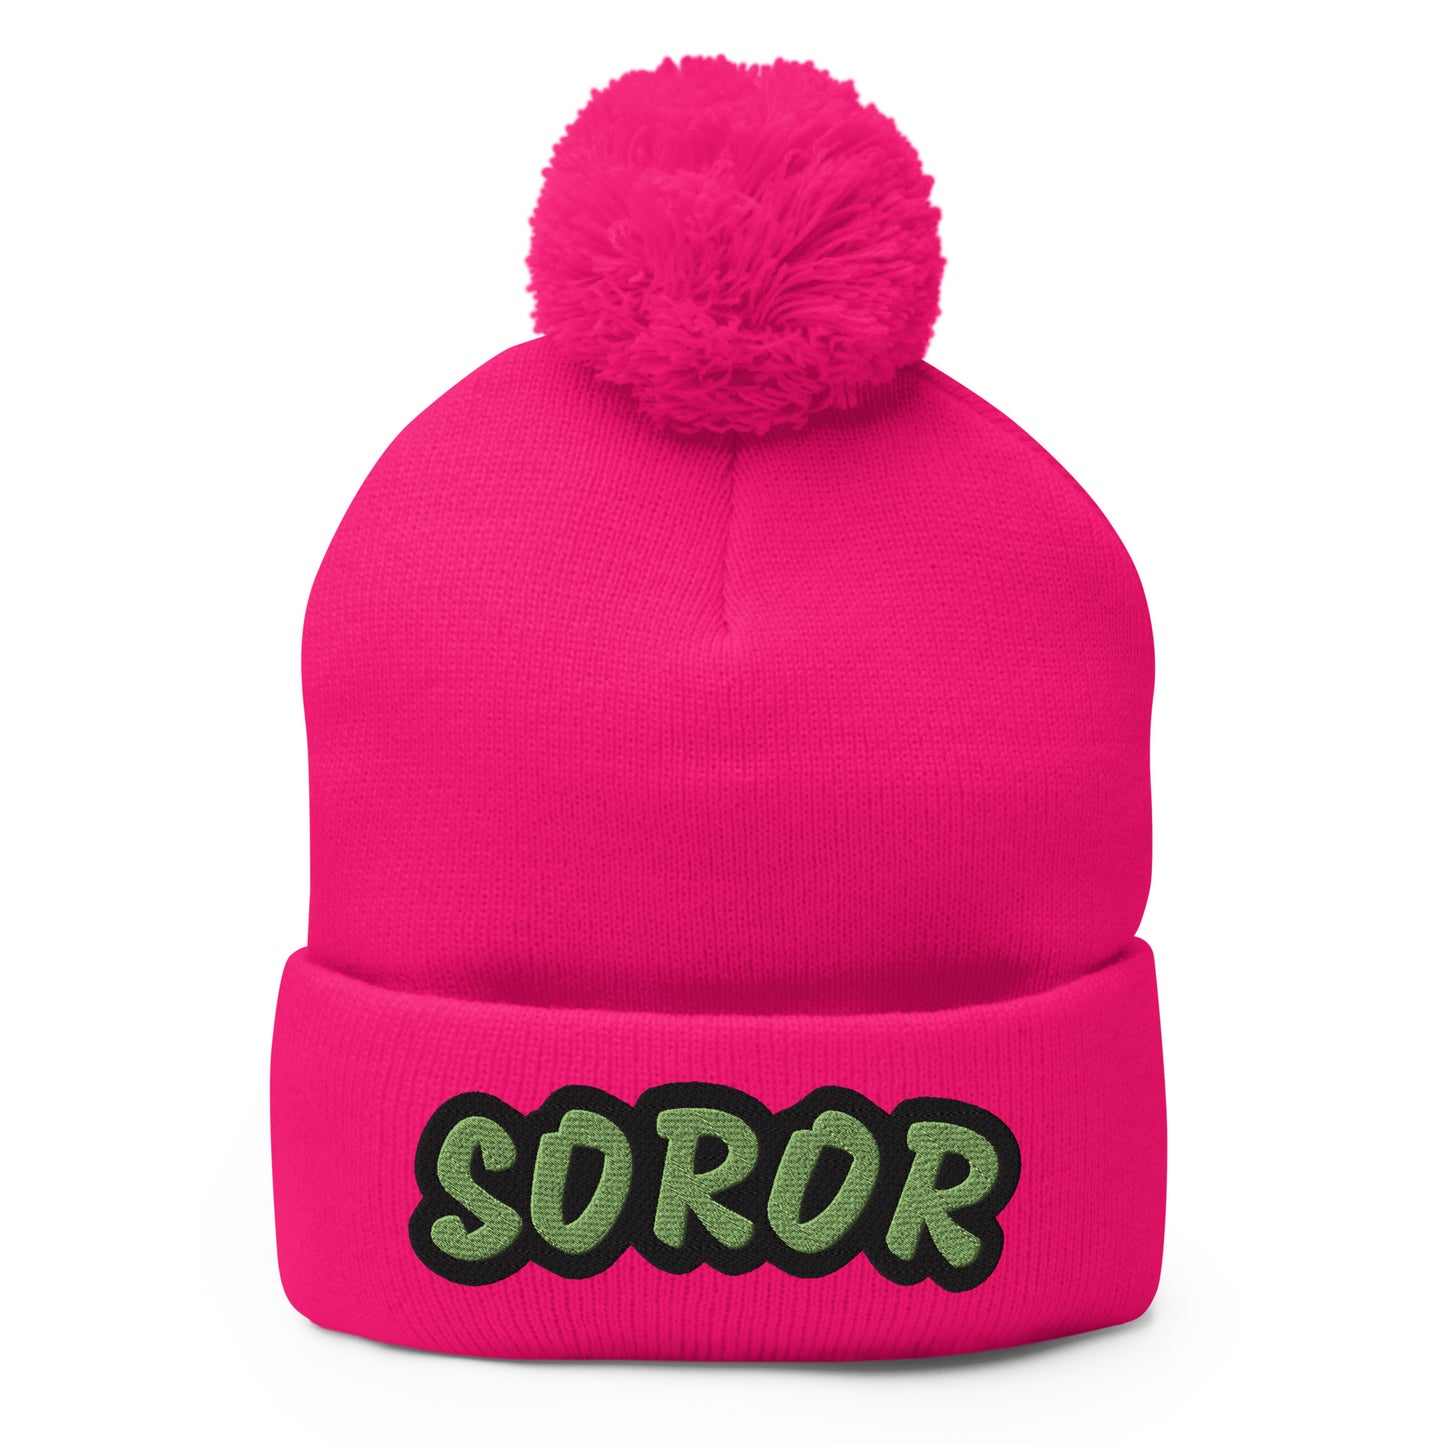 Soror Pom-Pom Beanie (pink)